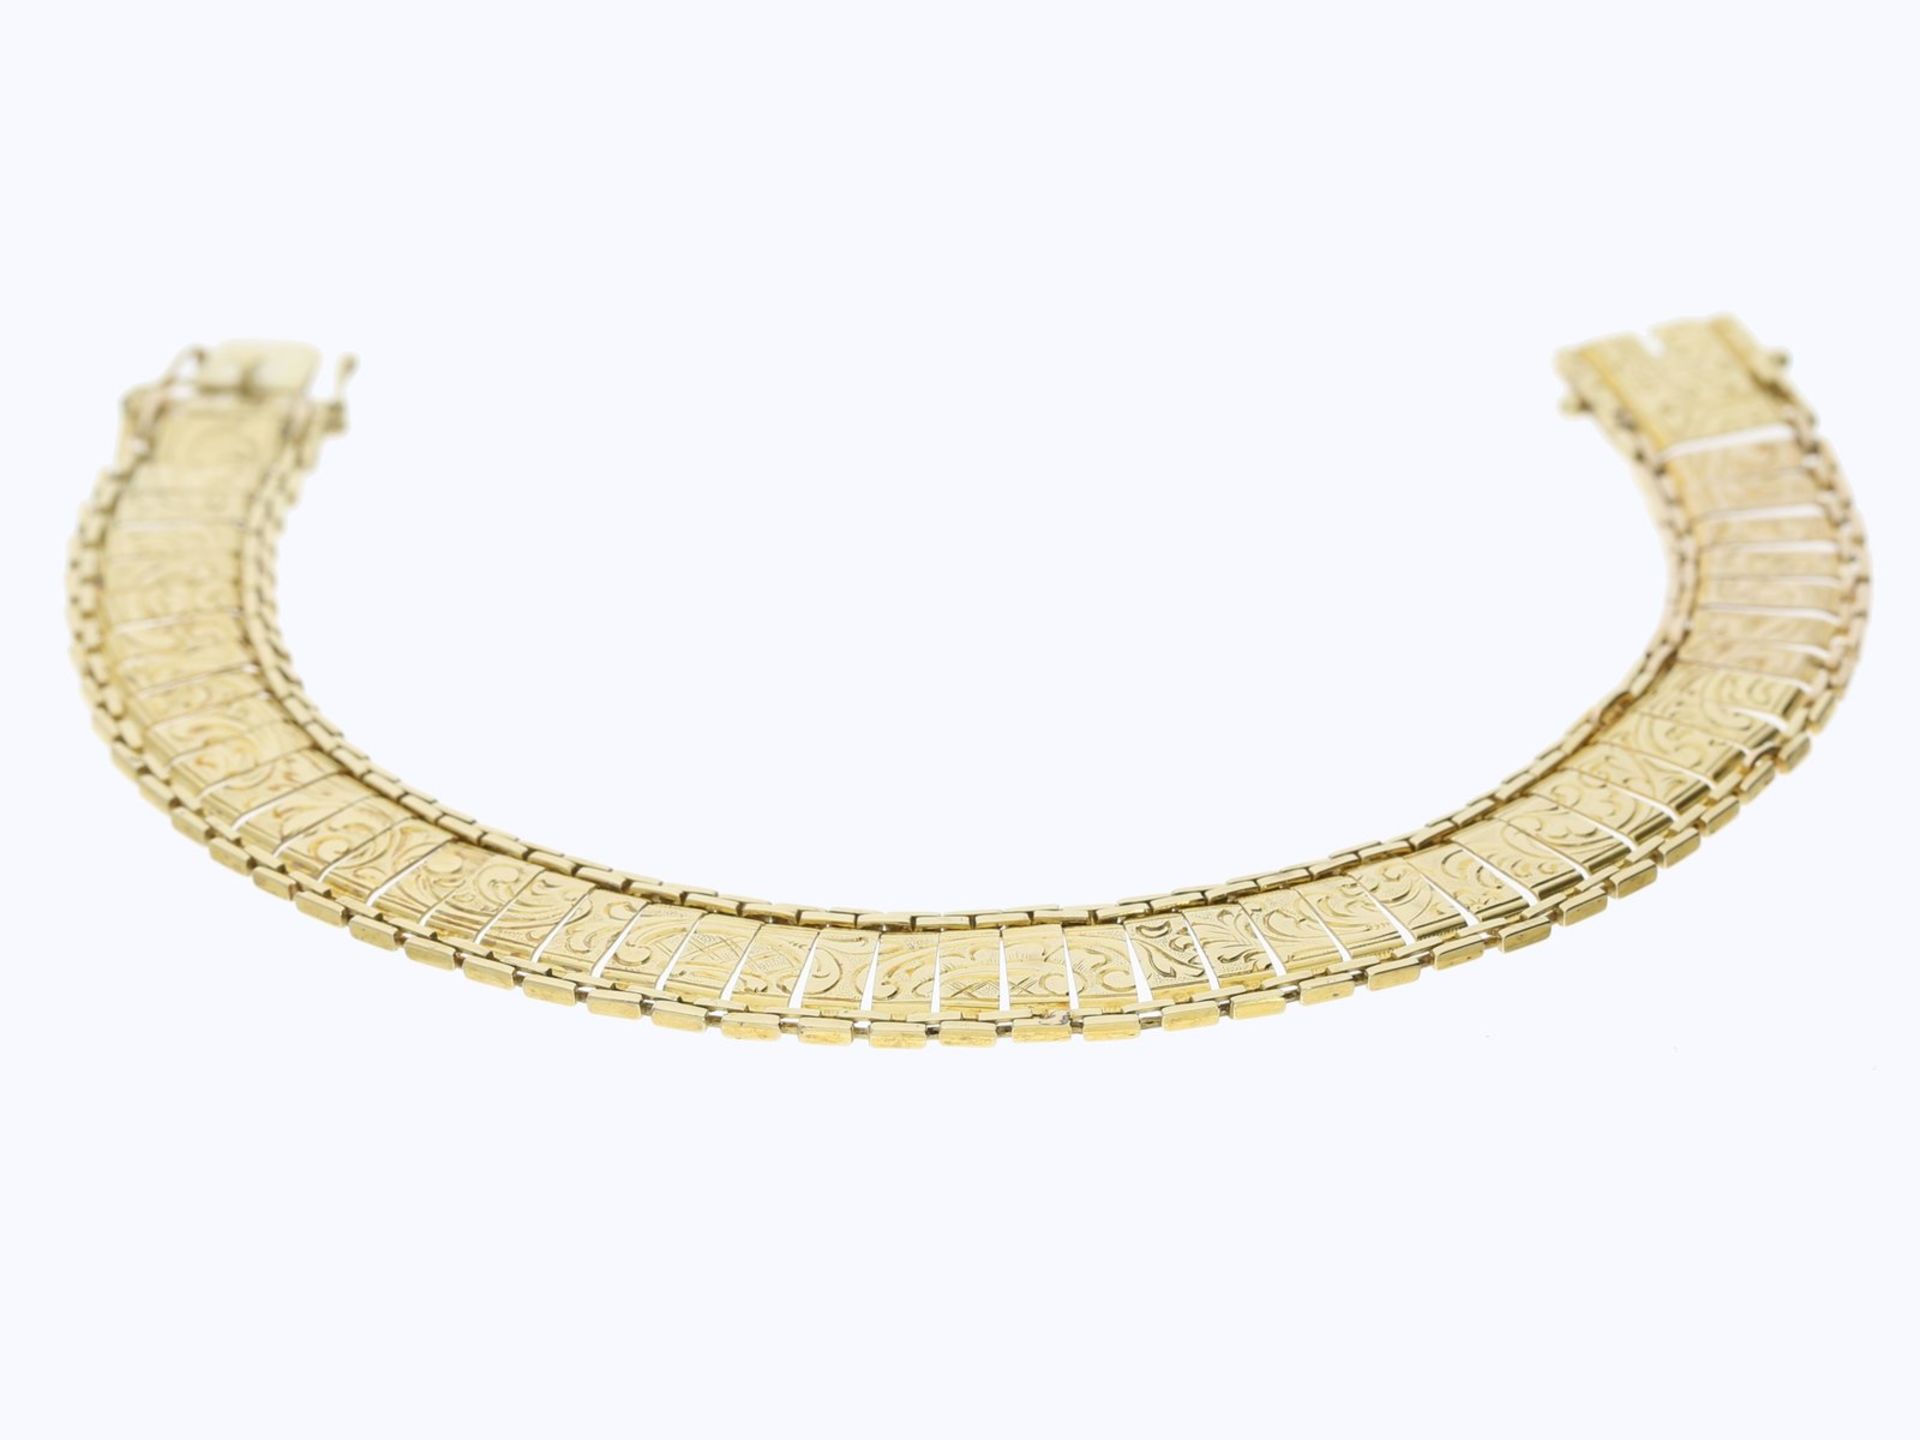 Armband: ungewöhnliches Goldarmband mit graviertem Dekor, 14K GelbgoldCa. 18,5cm lang, ca. 11mm